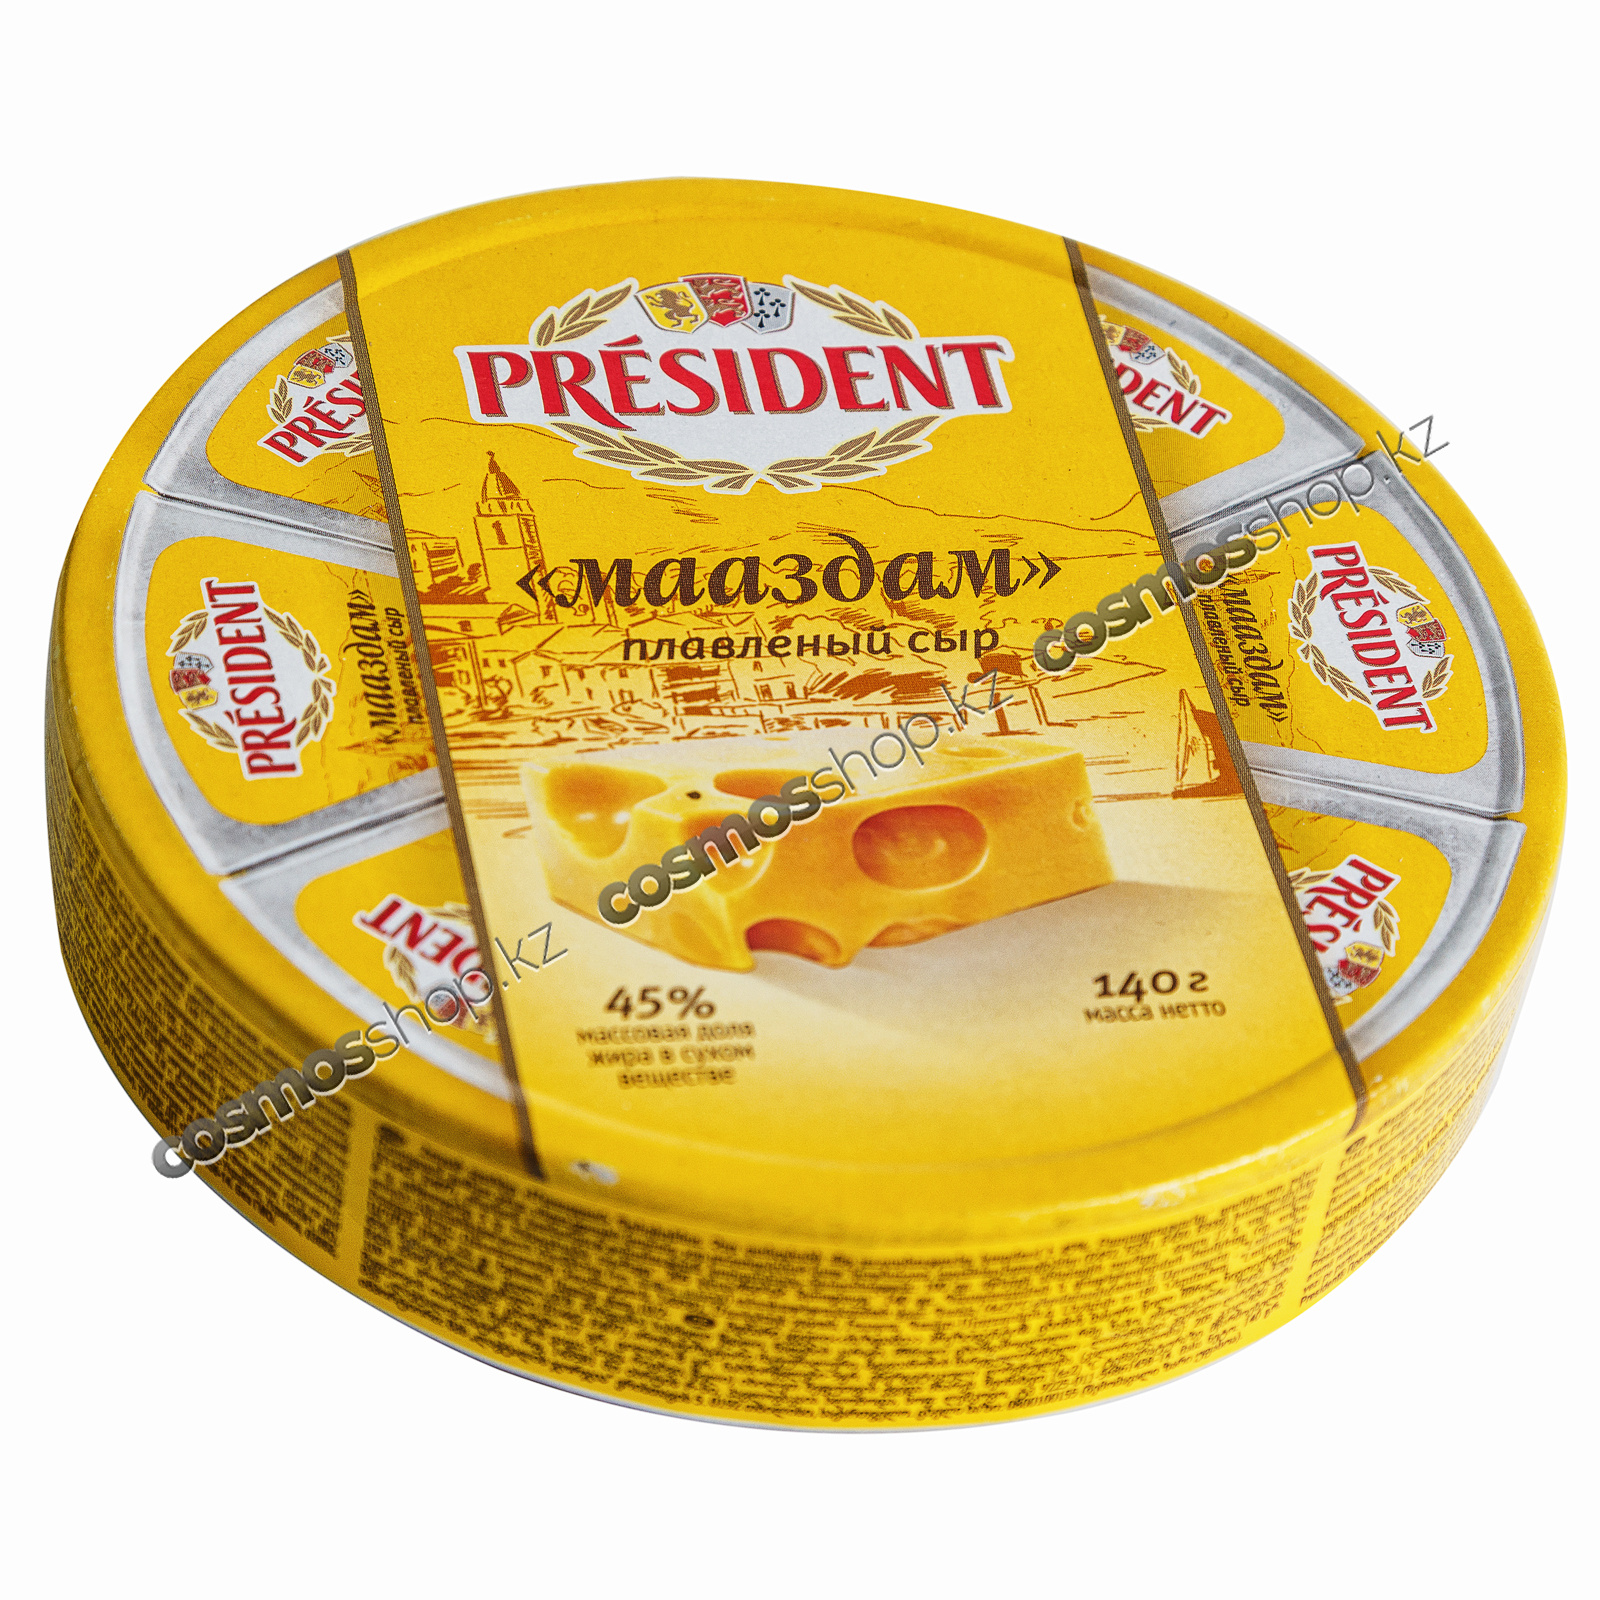 Сколько стоит дешевый сыр. Сыр President Маасдам твердый. Сыр плавленый "President" круг Мааздам 140гр. Сыр в упаковке.